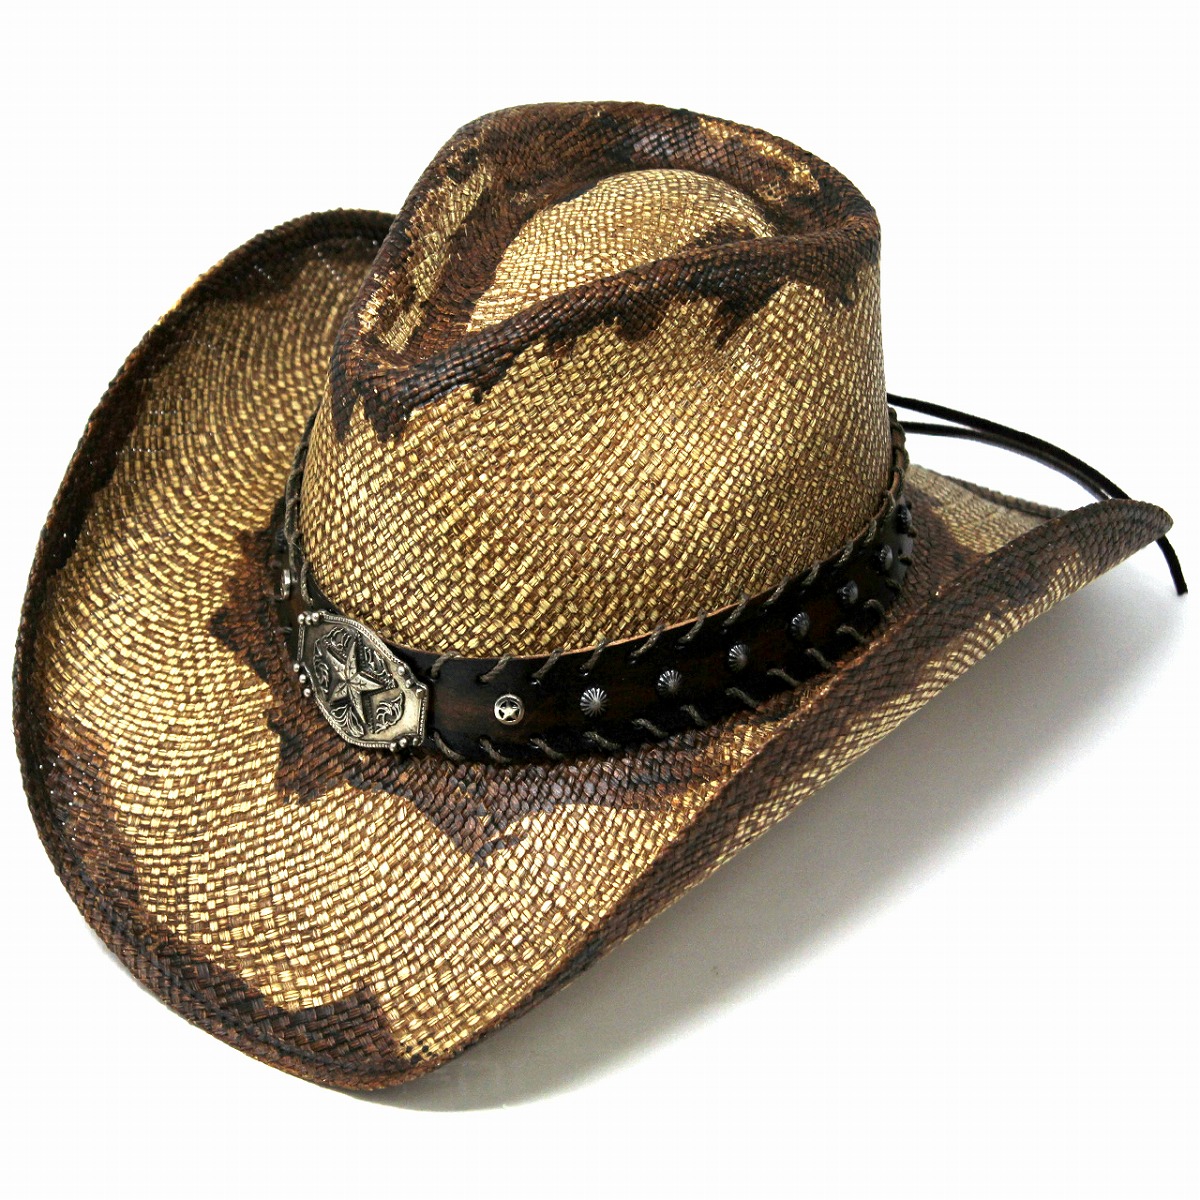 注目ブランド パナマハット カウボーイ 茶色 スター バックル ベルト ウエスタンハット メンズ 星 スタッズ 帽子 日除け テンガロン ストローハット California Hat Company Inc カウボーイ ハット 春夏 ウエスタン ワイヤー入り ブラウン Cowboy Hat Panama Hat